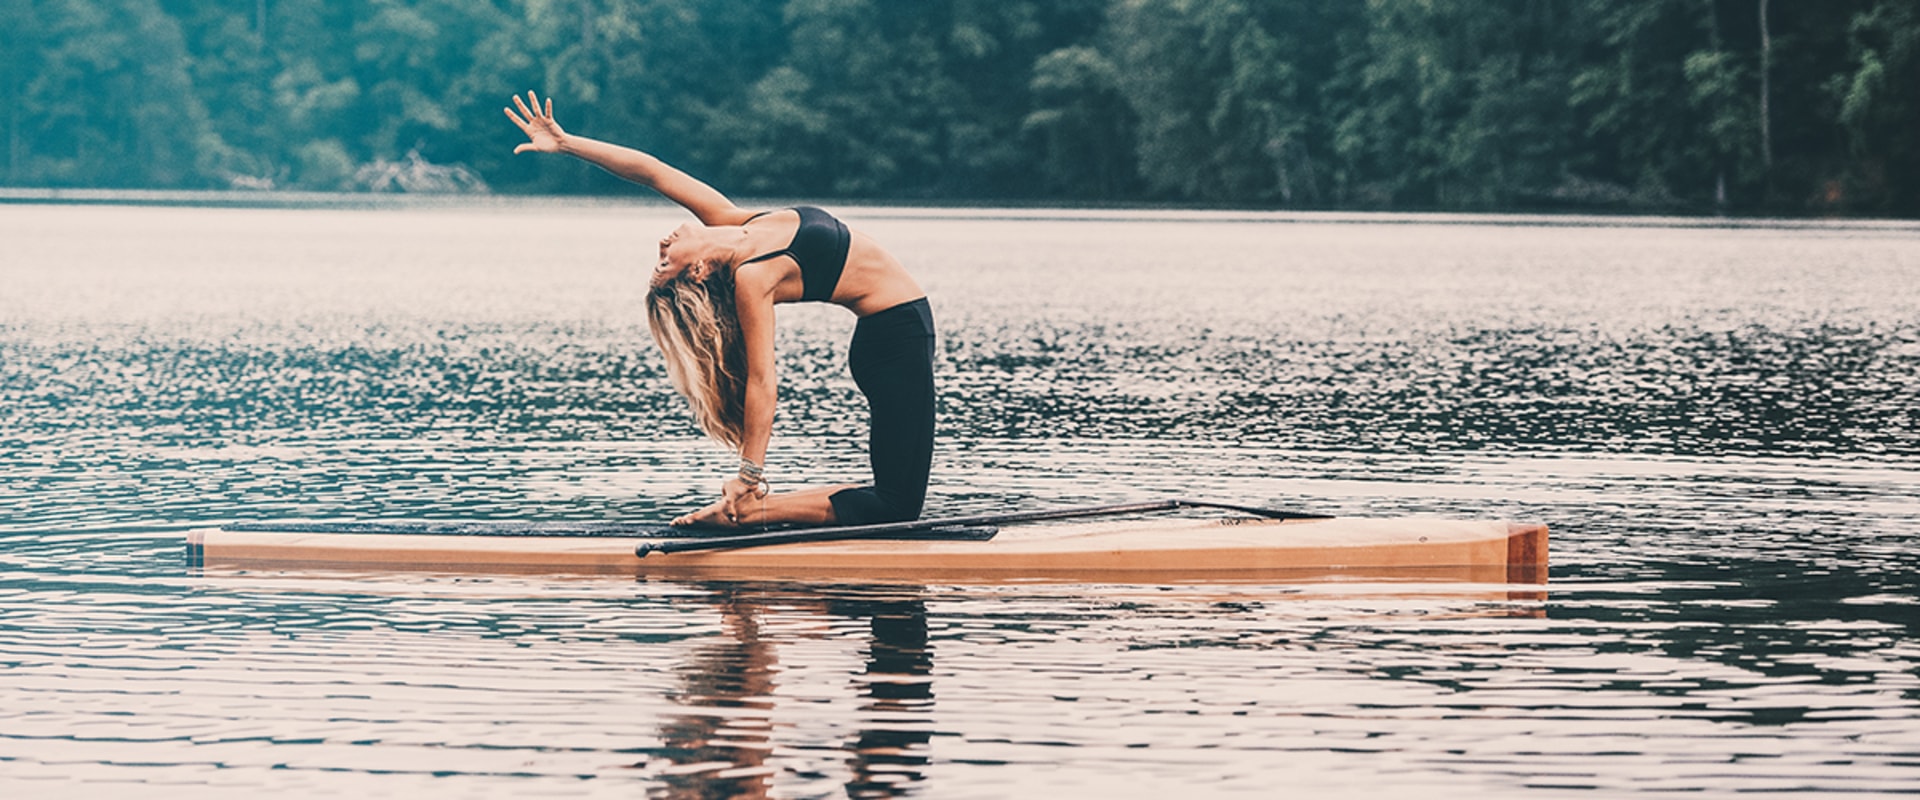 Ist Paddleboard Yoga schwer?